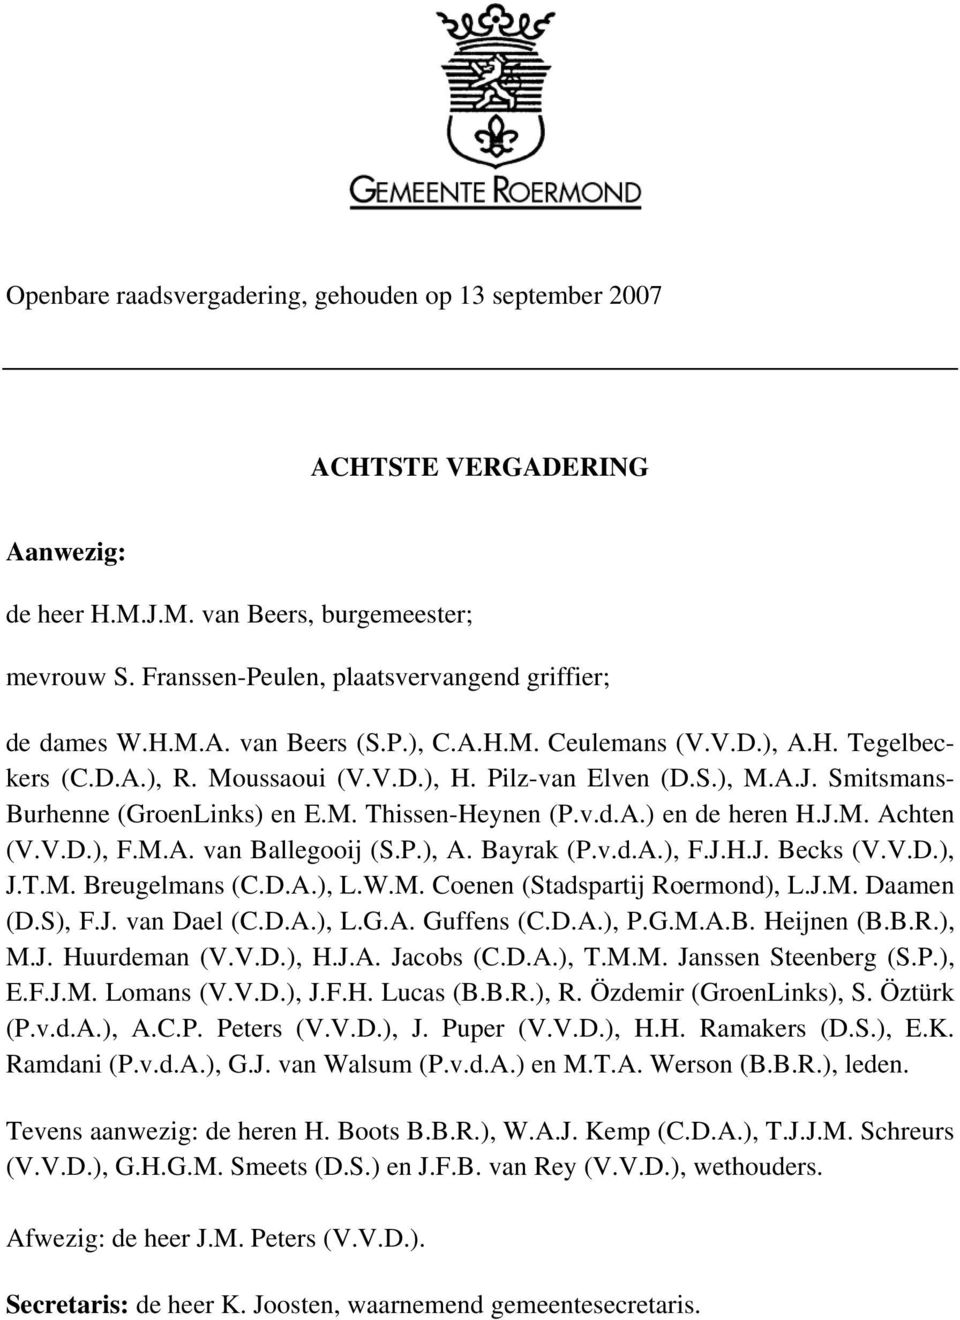 J.M. Achten (V.V.D.), F.M.A. van Ballegooij (S.P.), A. Bayrak (P.v.d.A.), F.J.H.J. Becks (V.V.D.), J.T.M. Breugelmans (C.D.A.), L.W.M. Coenen (Stadspartij Roermond), L.J.M. Daamen (D.S), F.J. van Dael (C.